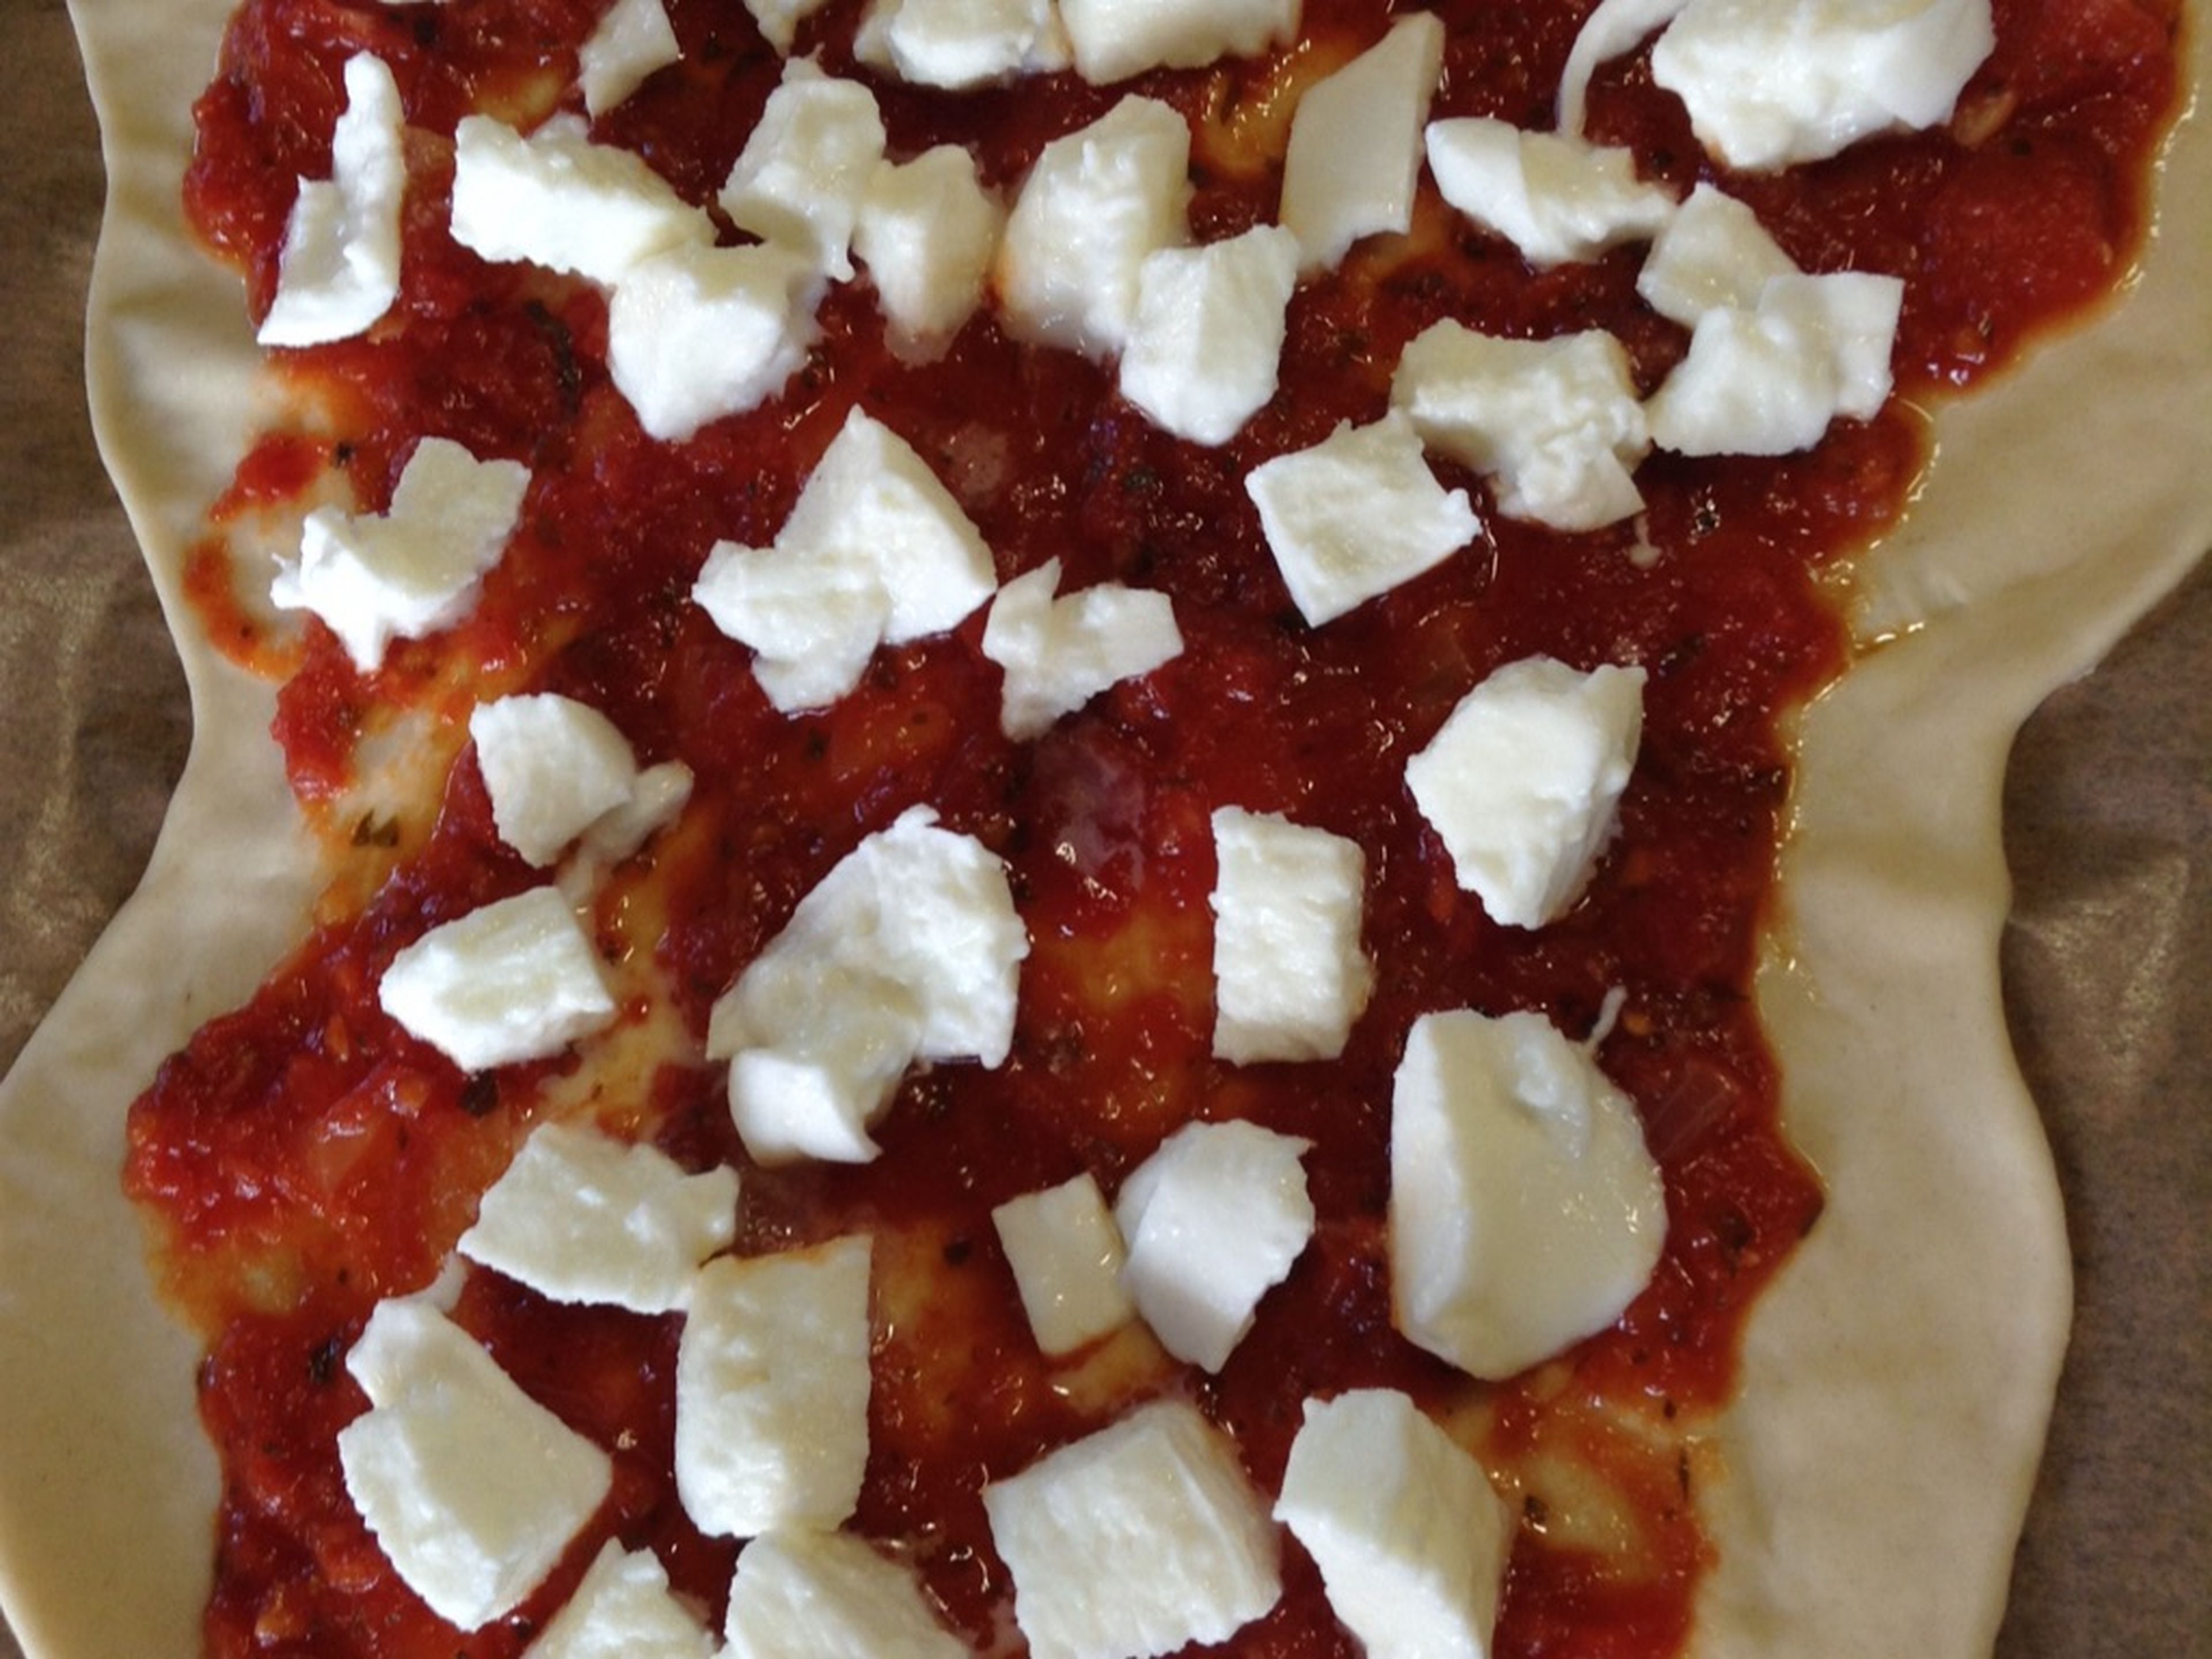 Nun kommt der Käse auf die Pizza. Ihr könnt jeden geriebenen Käse nehmen, den ihr wollt. Frischen Mozzarellakäse könnt ihr einfach mit den Händen zerkleinern und auf der Pizza verteilen.